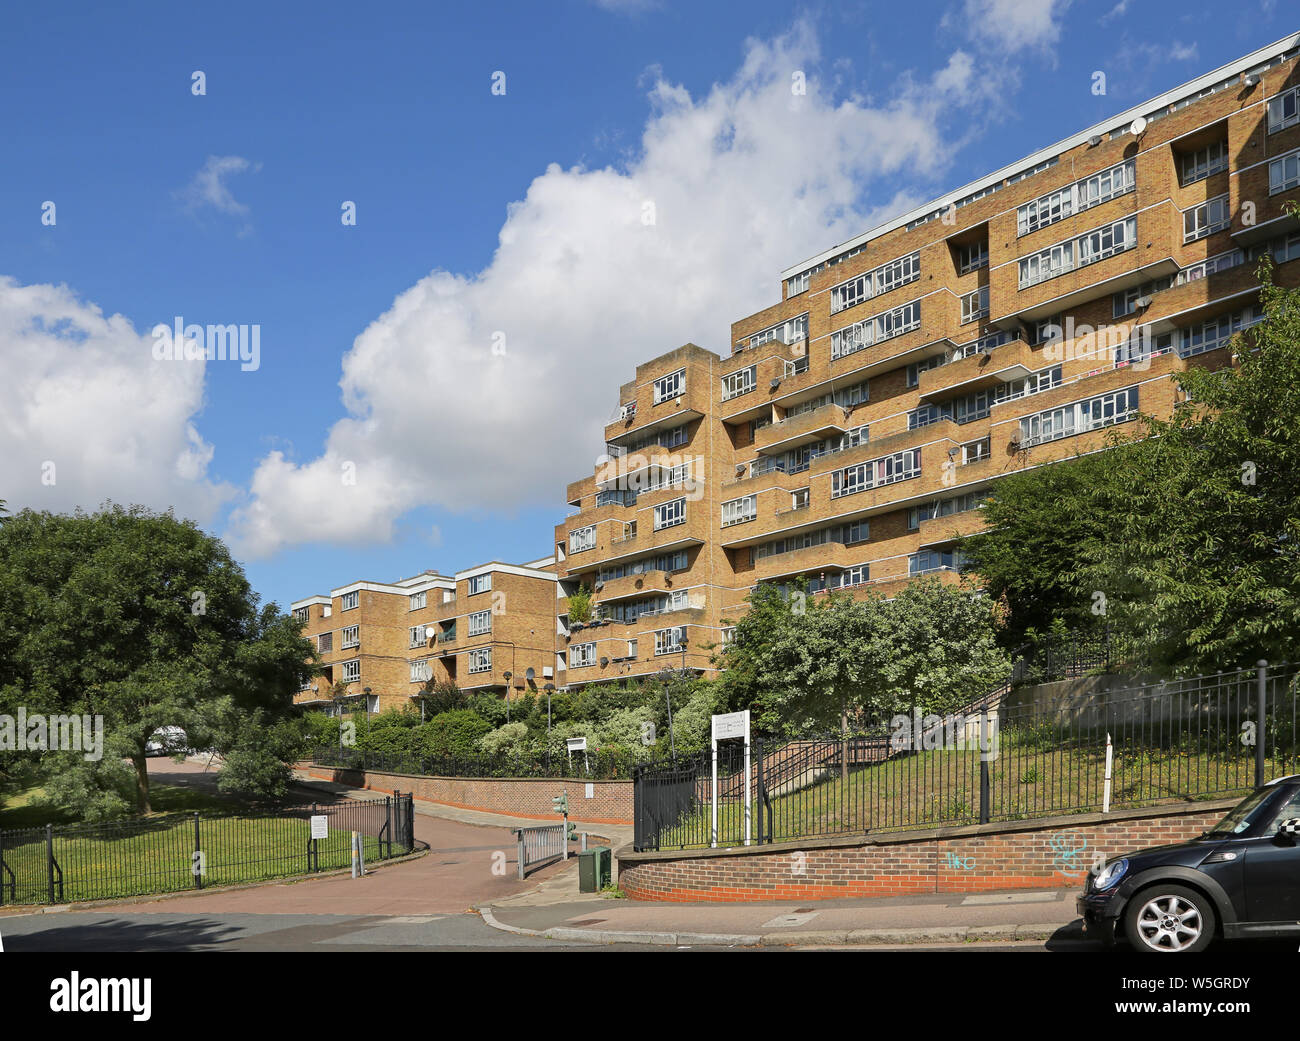 Dawson altezze, il famoso 1960s'edilizia pubblica progetto nel Sud di Londra, progettato da Kate Macintosh. Blocco del nord visto da sud. Foto Stock